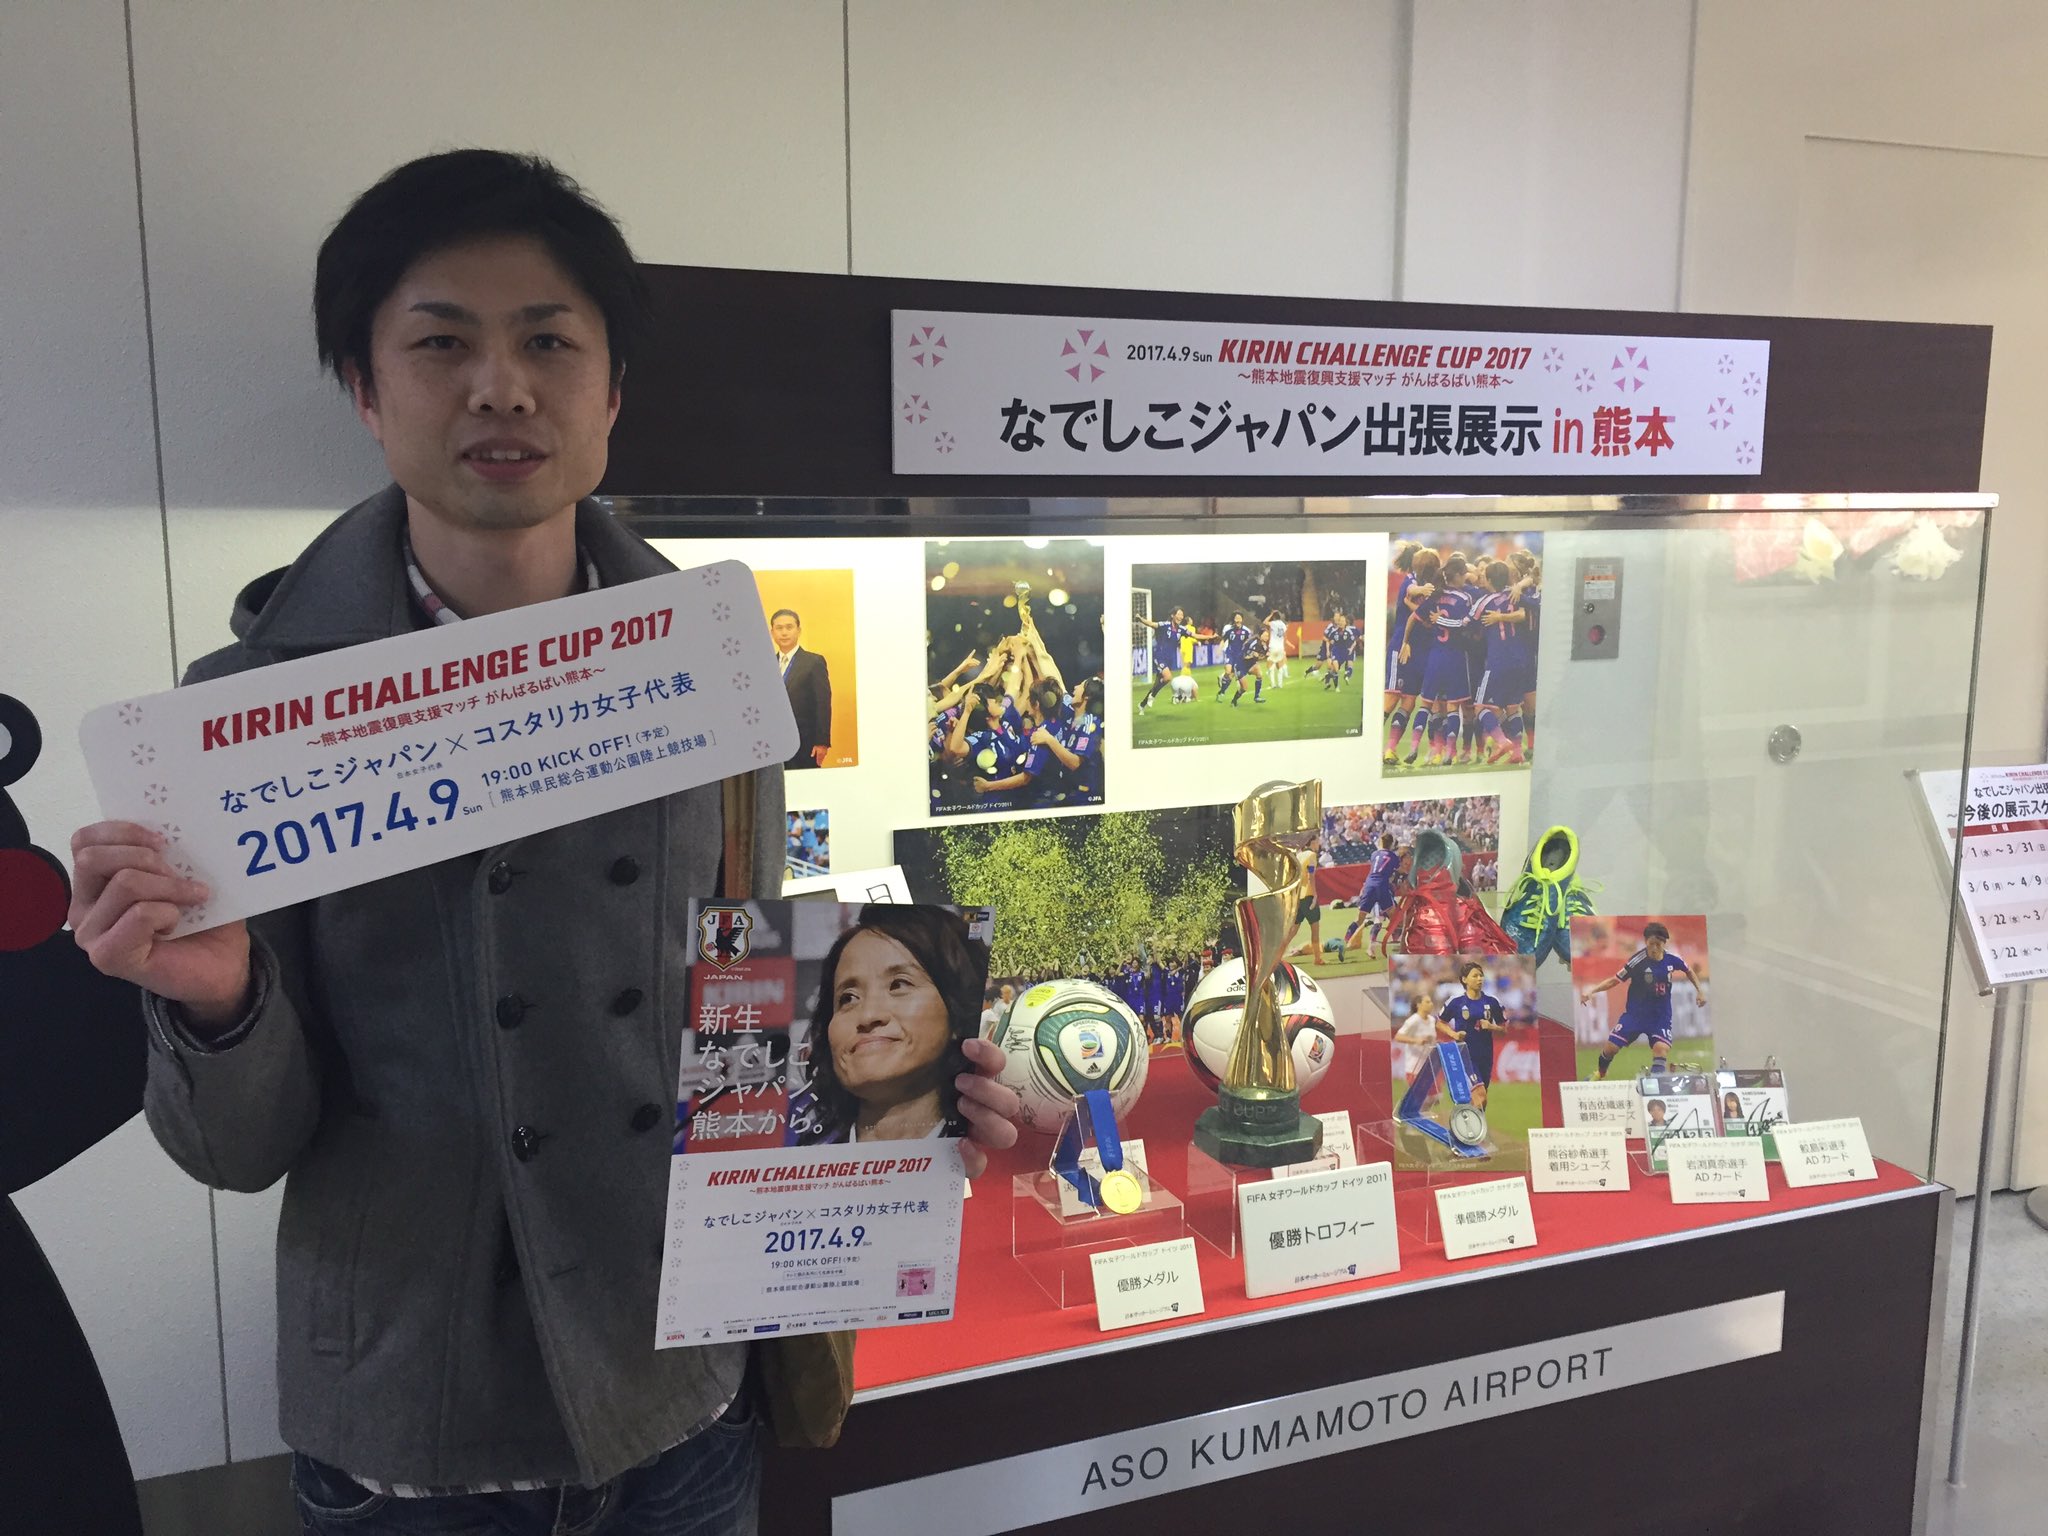 Uzivatel Jfaなでしこサッカー Na Twitteru なでしこジャパン出張展示in熊本 熊本空港 本日 これを見に来ました という声を本当に多くいただきました ご来場 誠にありがとうございました キリンチャレンジカップ17 4 9 熊本 T Co